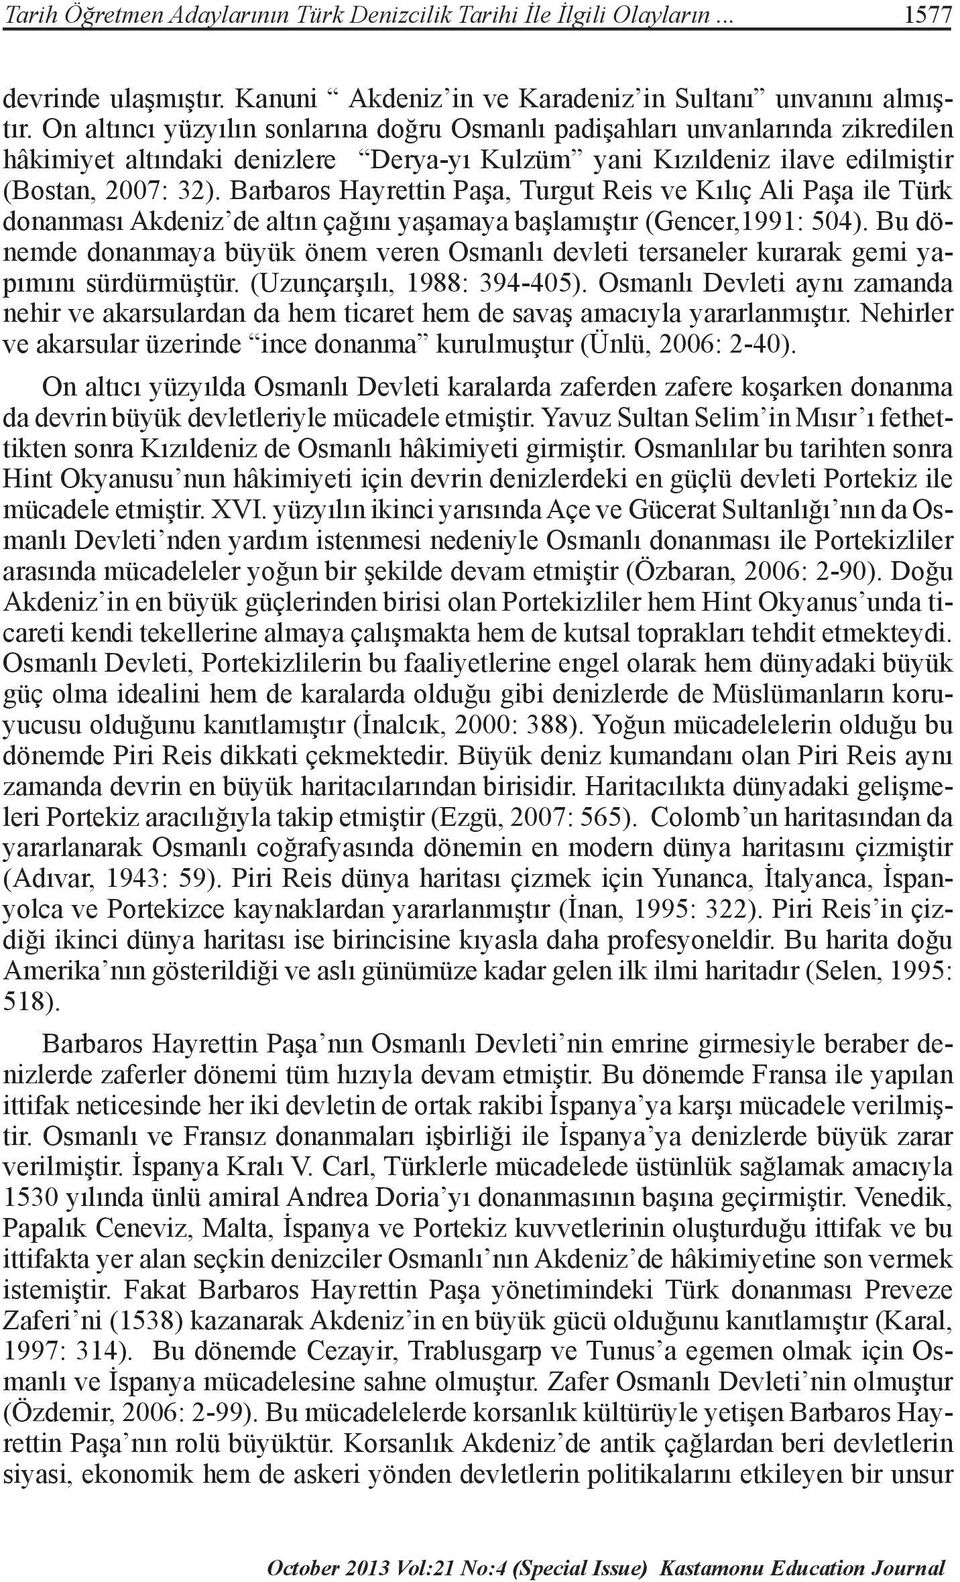 Barbaros Hayrettin Paşa, Turgut Reis ve Kılıç Ali Paşa ile Türk donanması Akdeniz de altın çağını yaşamaya başlamıştır (Gencer,1991: 504).